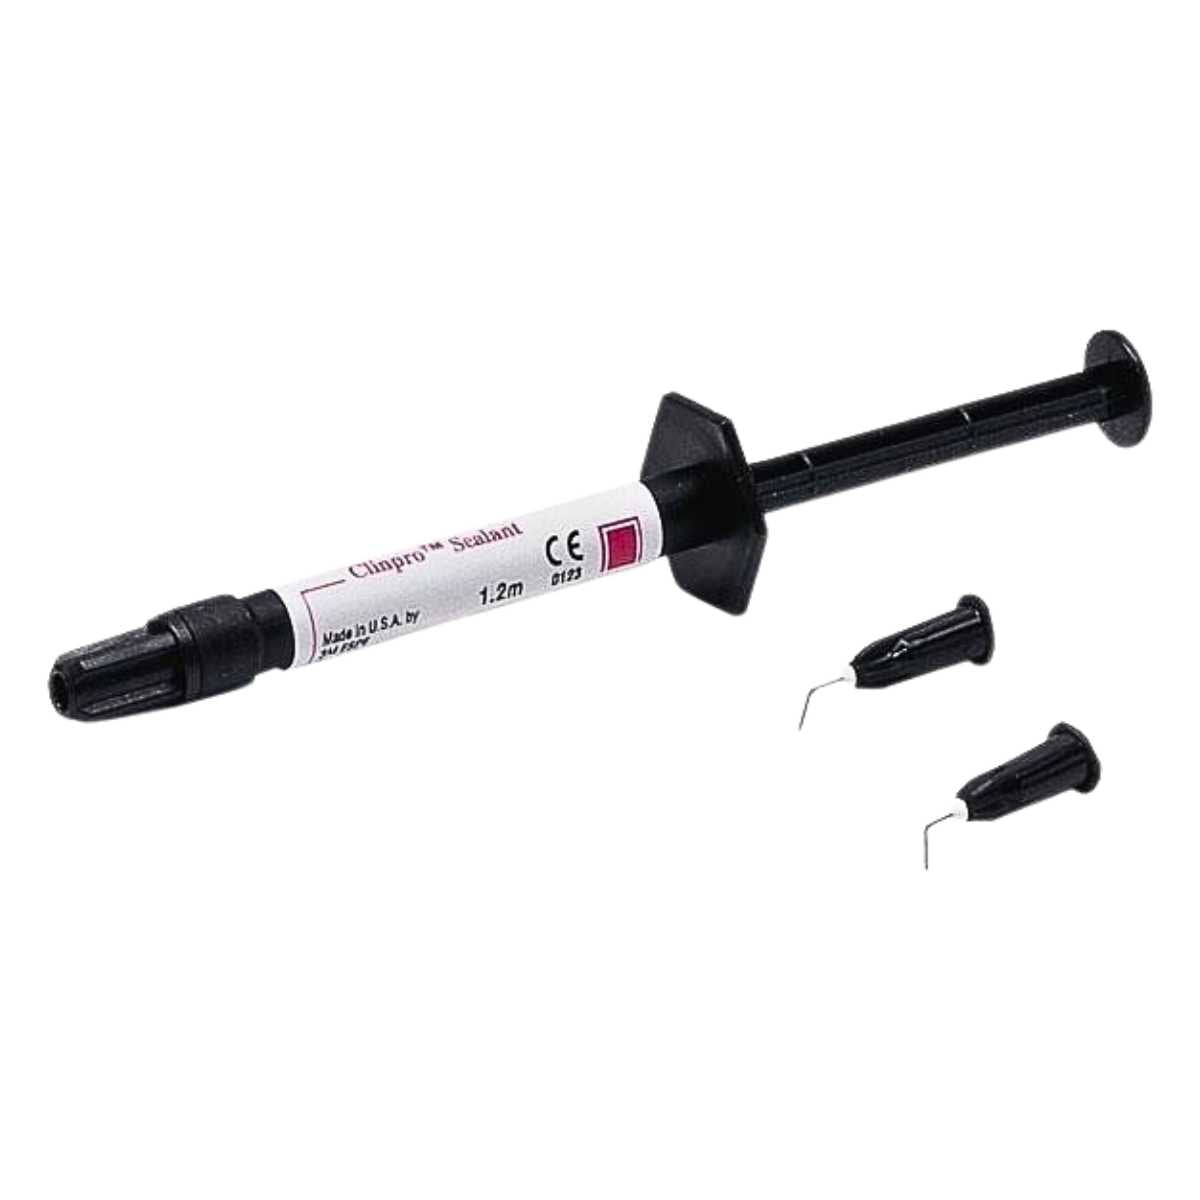 3M™ Clinpro™ Sealant Introductory Syringe 1.2ml syringe